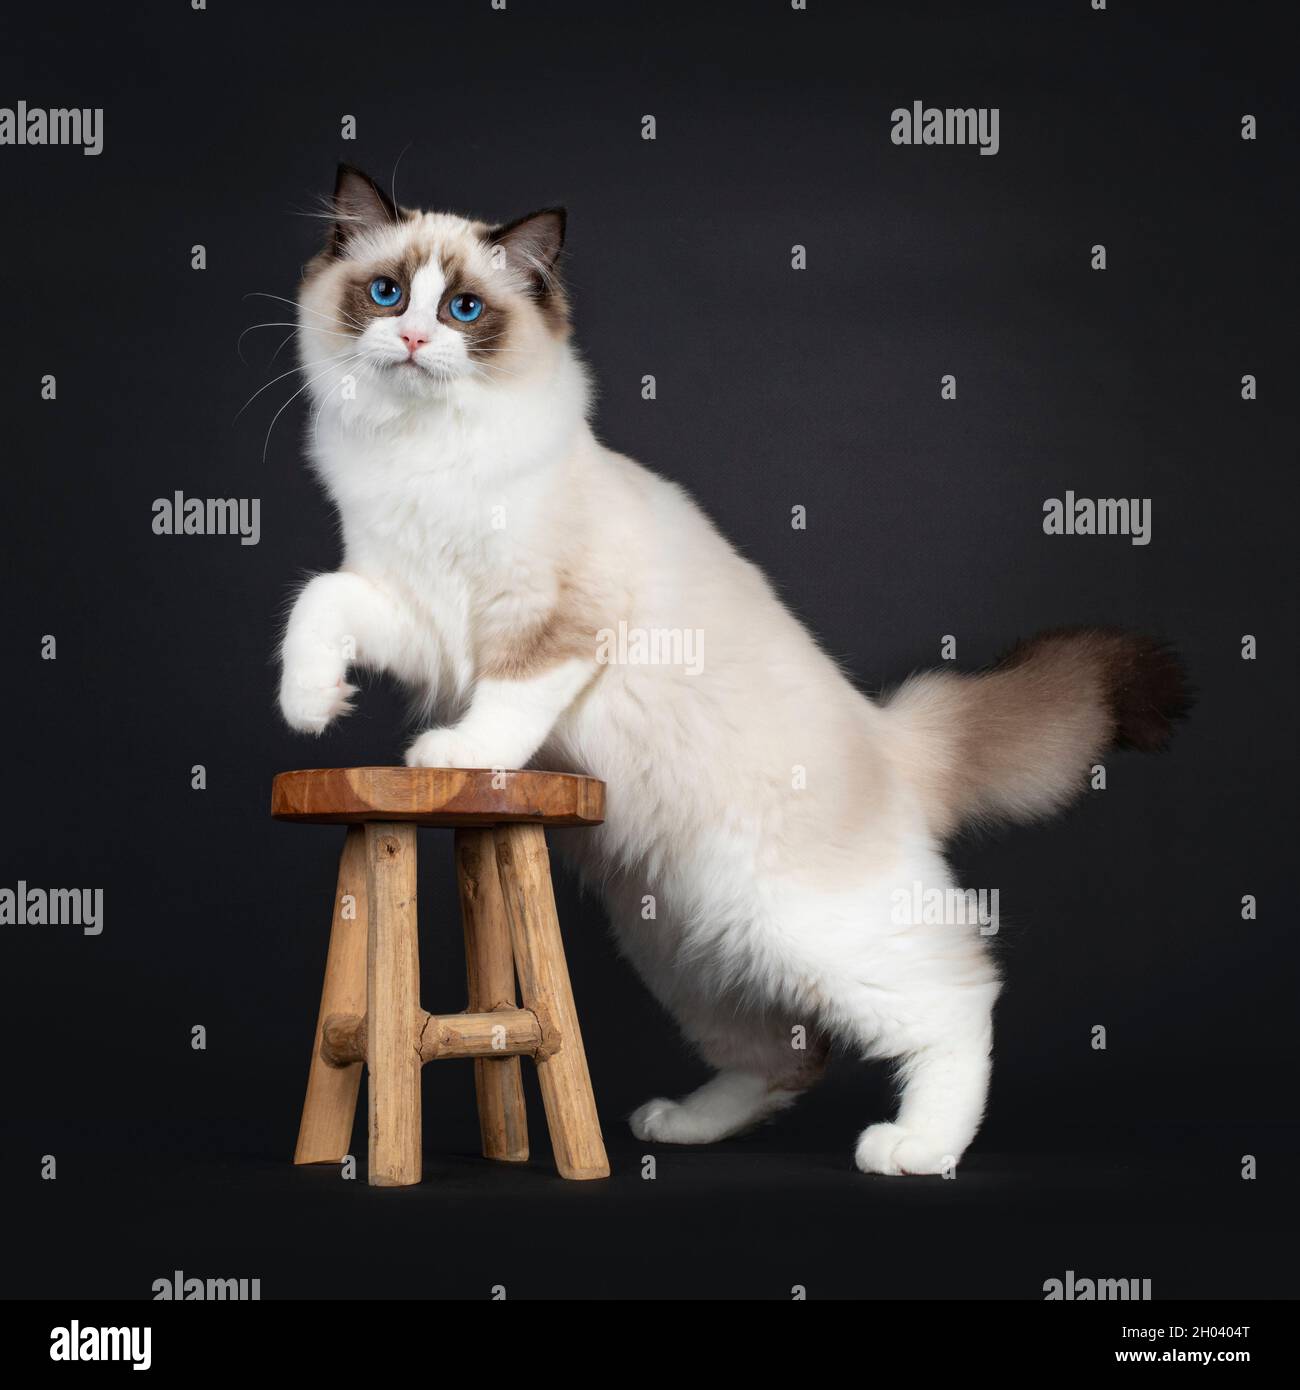 Joli sceau bicolore Ragdoll chat chaton, debout côtés avec patte avant sur petit tabouret en bois.Deuxième patte jouée dans l'air.Regarder l'objectif avec mesmer Banque D'Images